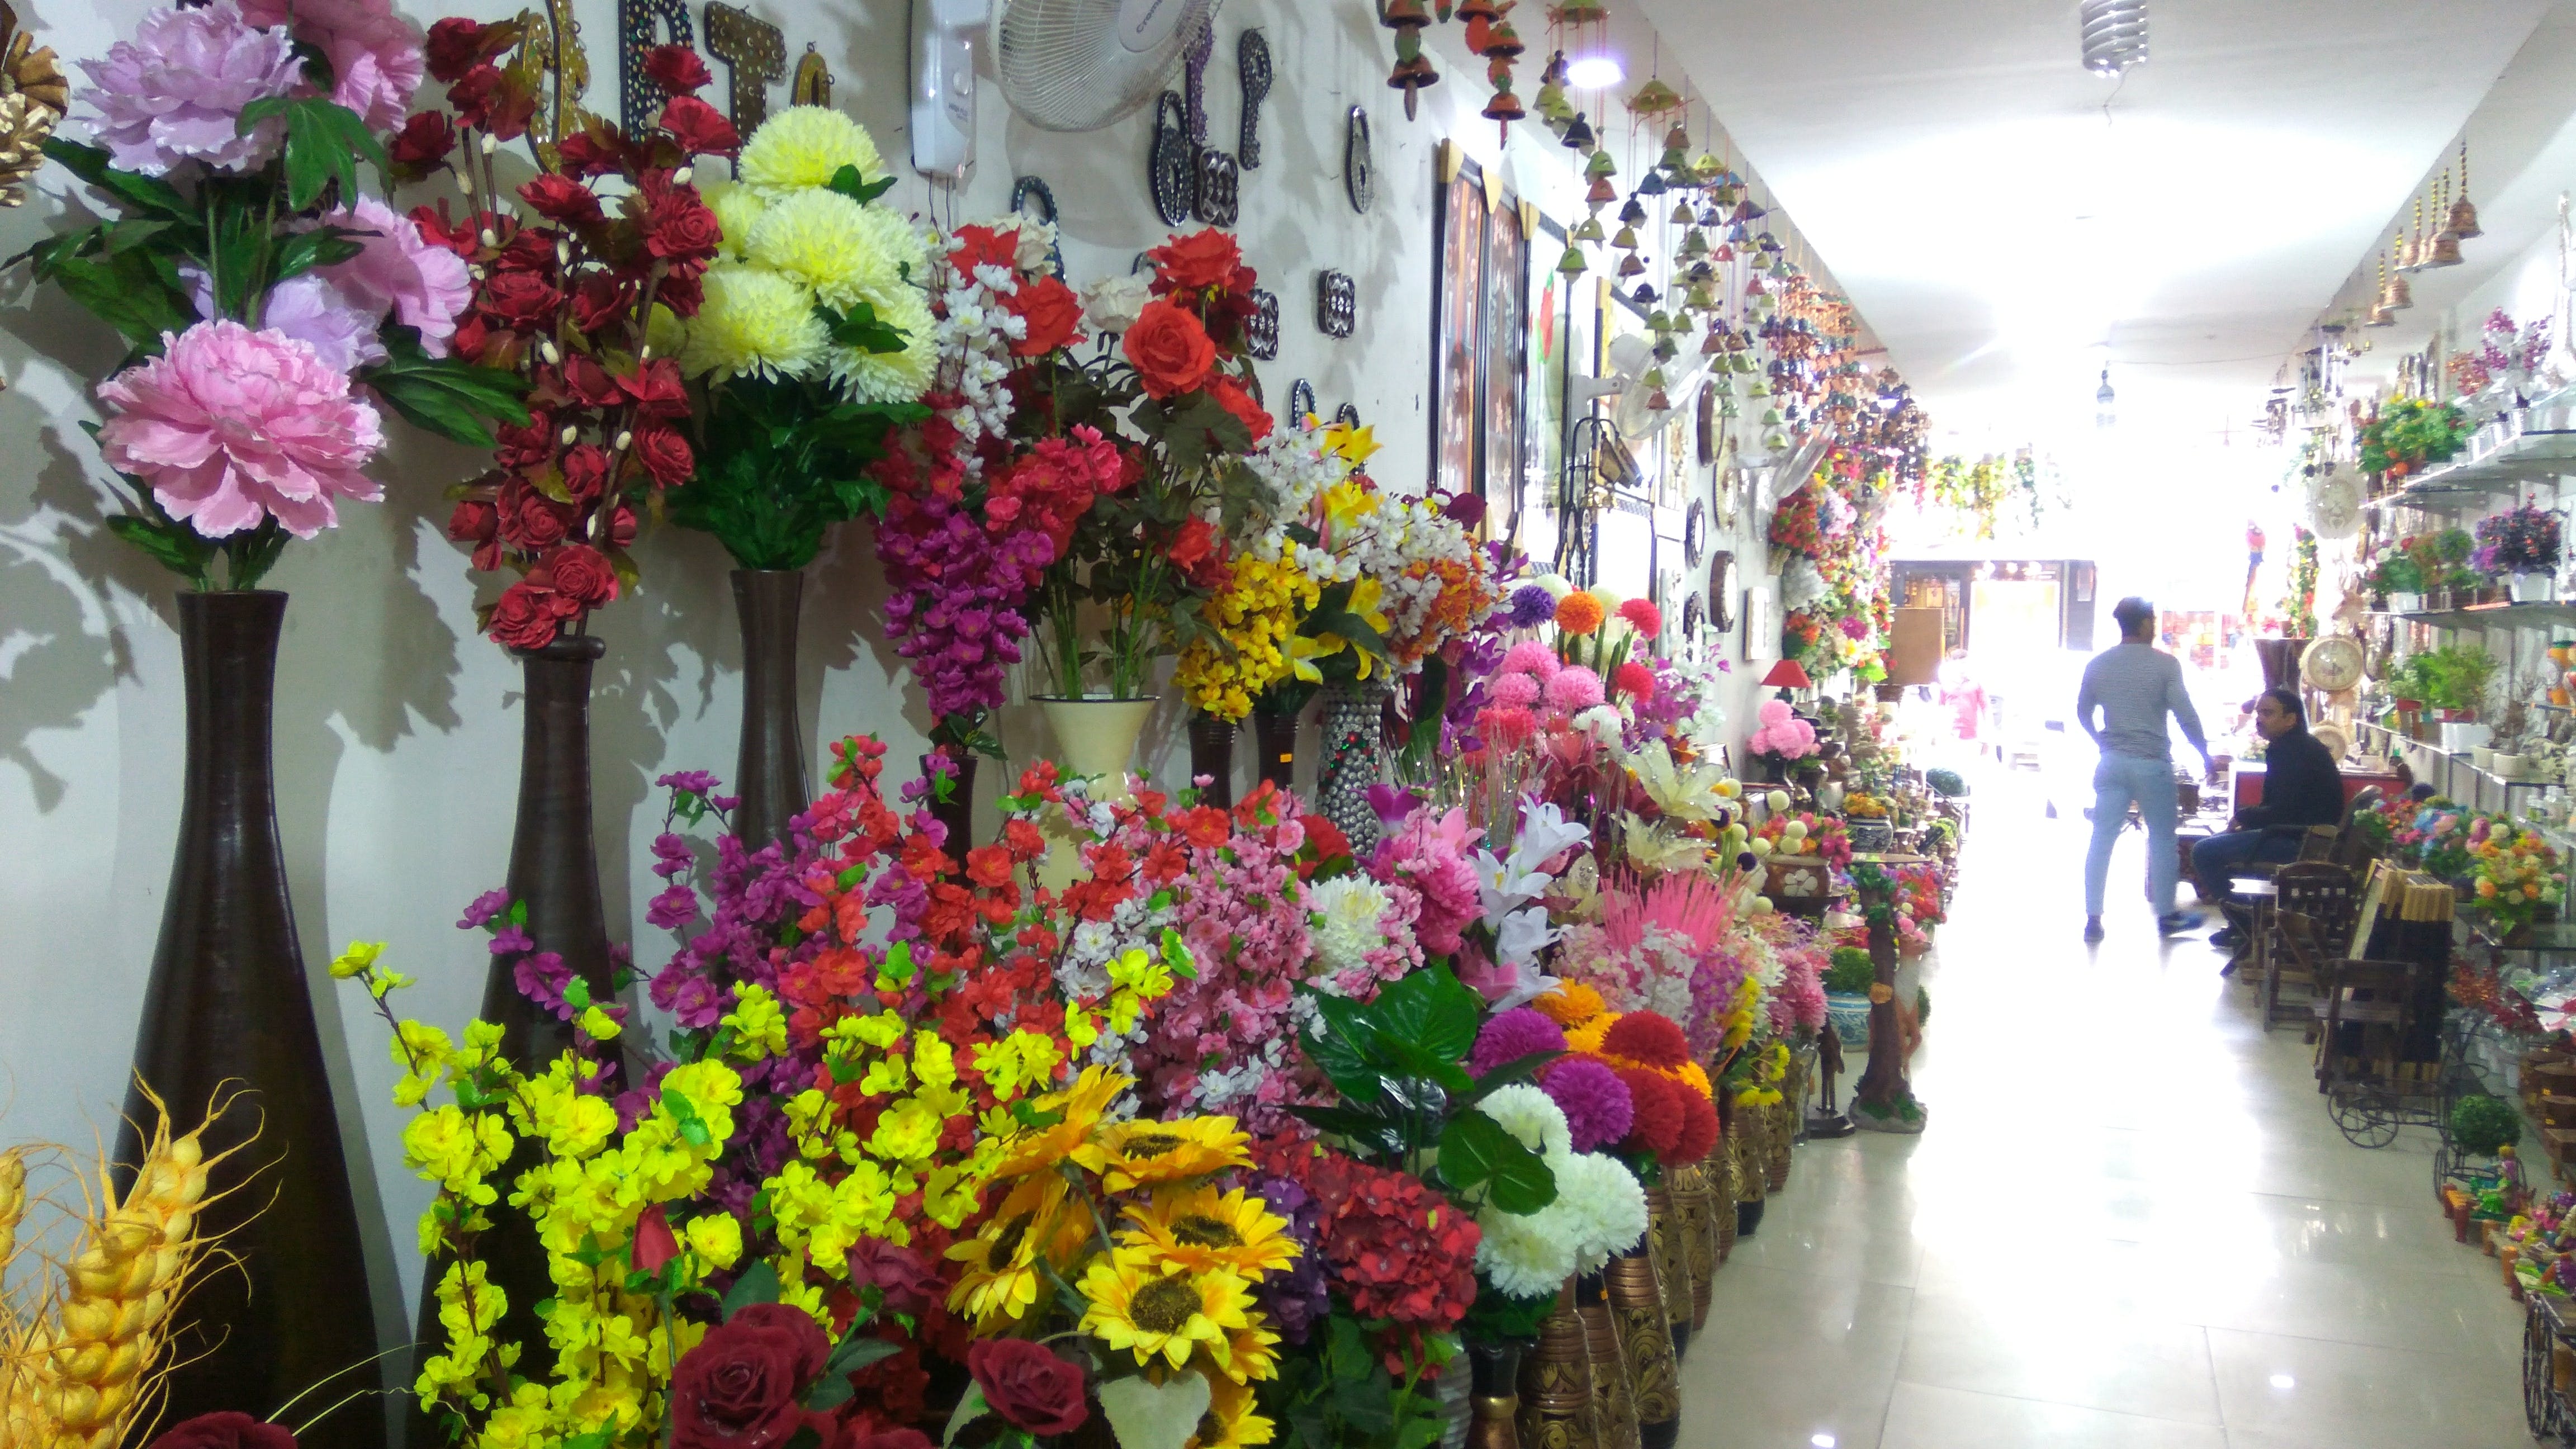 Flower,Floristry,Flower Arranging,Floral design,Bouquet,Cut flowers,Plant,Artificial flower,Building,Art